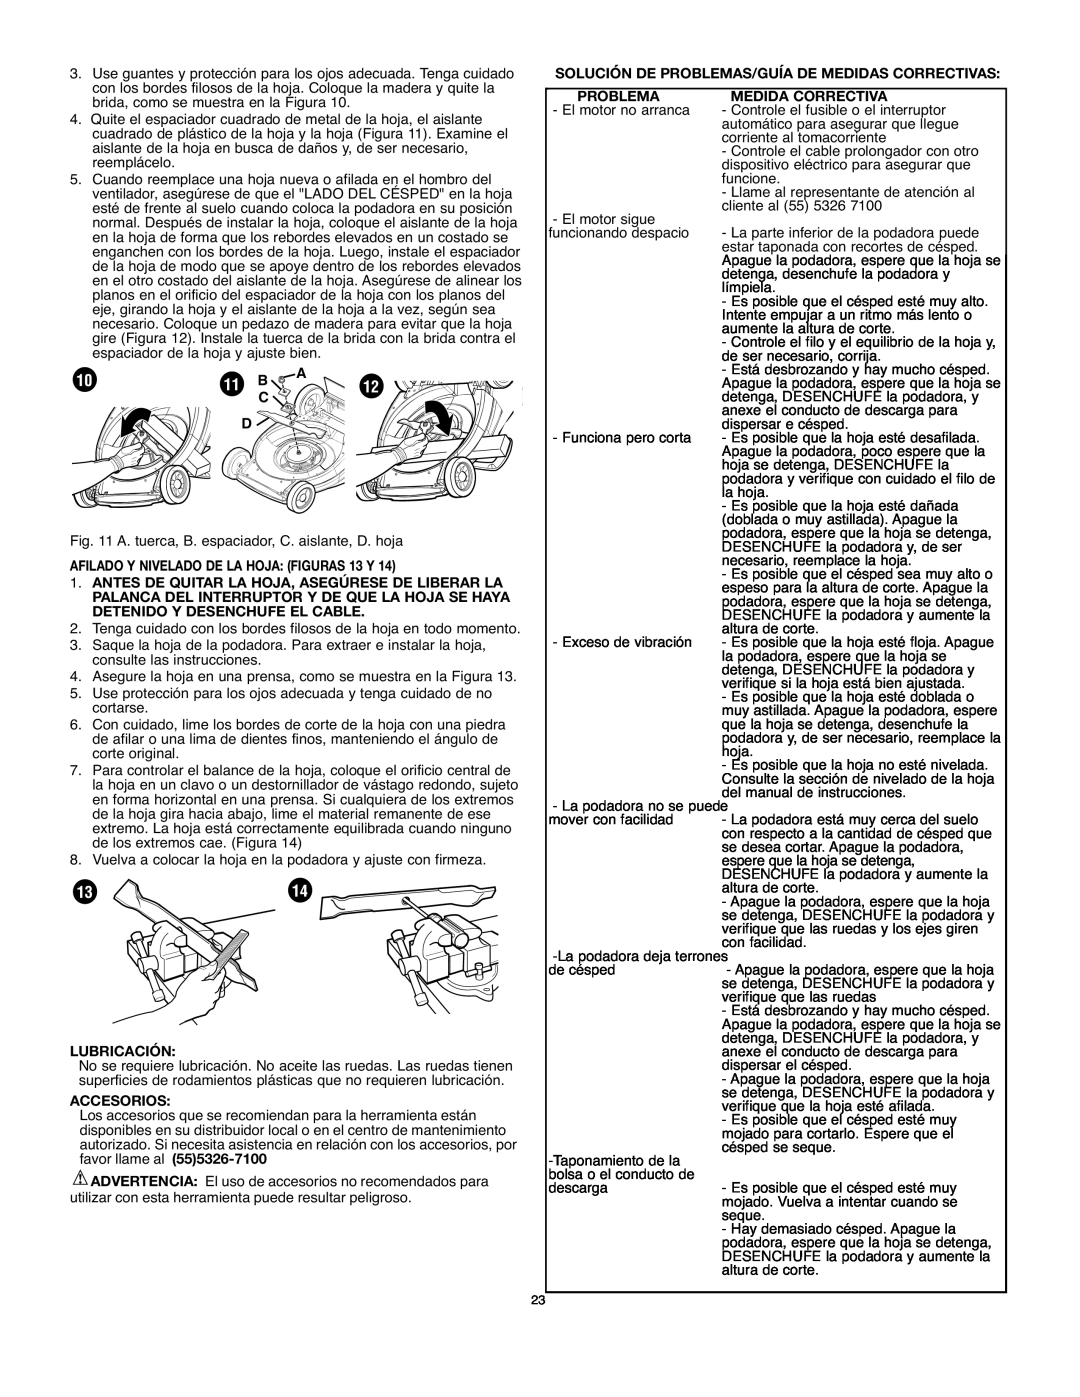 Black & Decker mm275 instruction manual 11 B, AFILADO Y NIVELADO DE LA HOJA FIGURAS 13 Y, Lubricación, Accesorios 